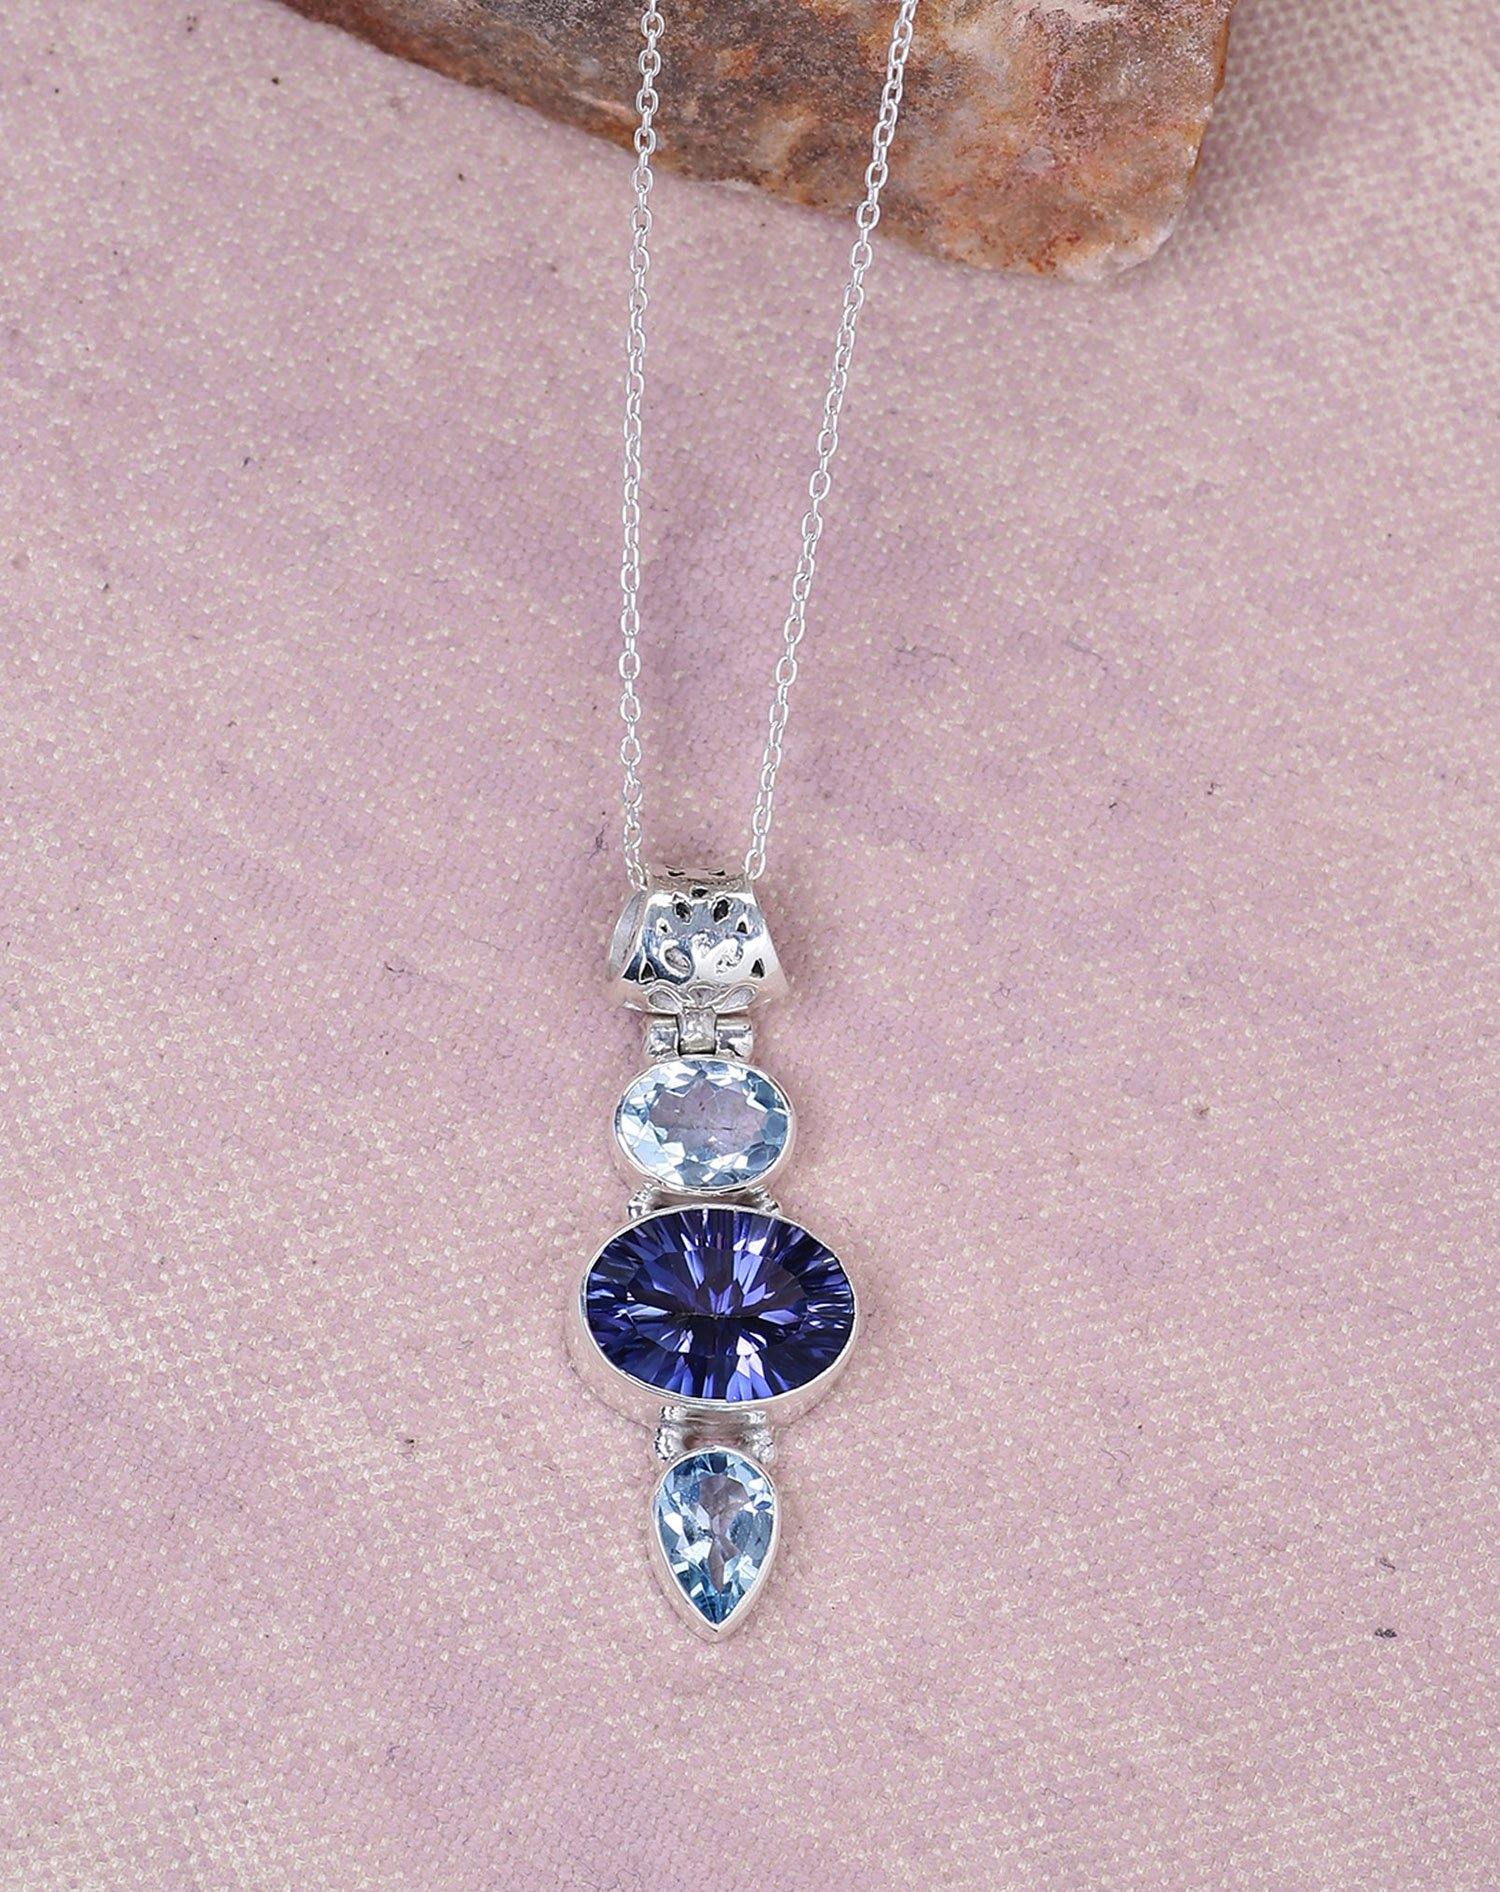 Blue Quartz Solid 925 Sterling Silver Chain Pendant Jewelry - YoTreasure